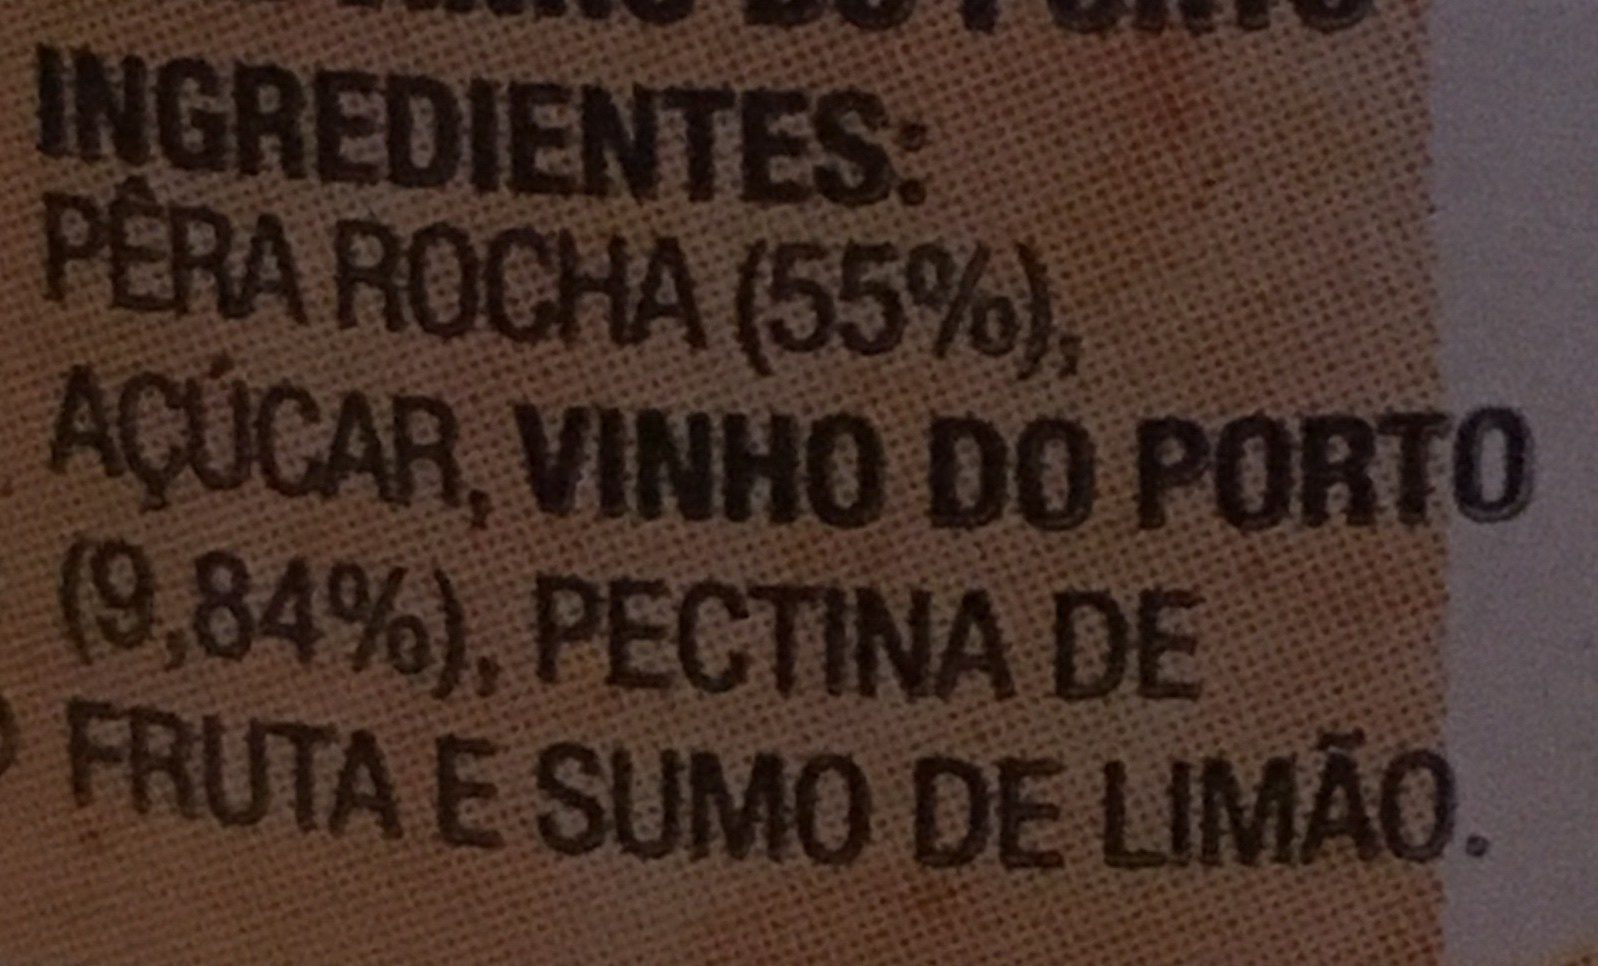 DOCE DE PÊRA ROCHA COM VINHO DO PORTO - Ingredients - fr